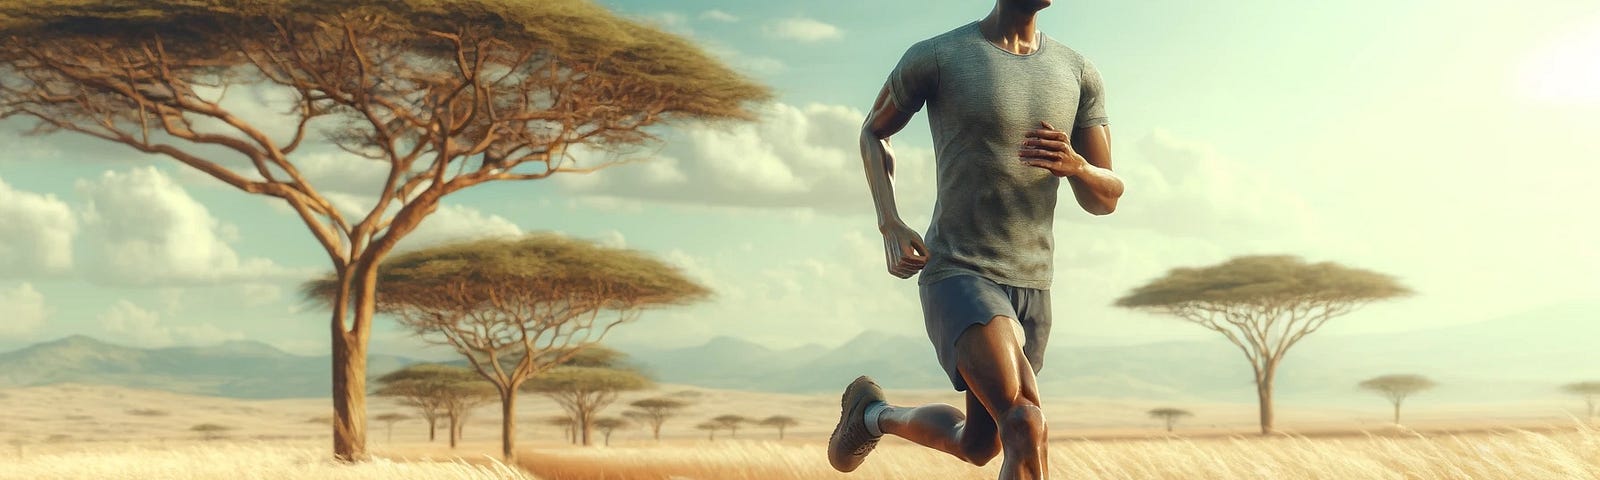 A man running in the savannah